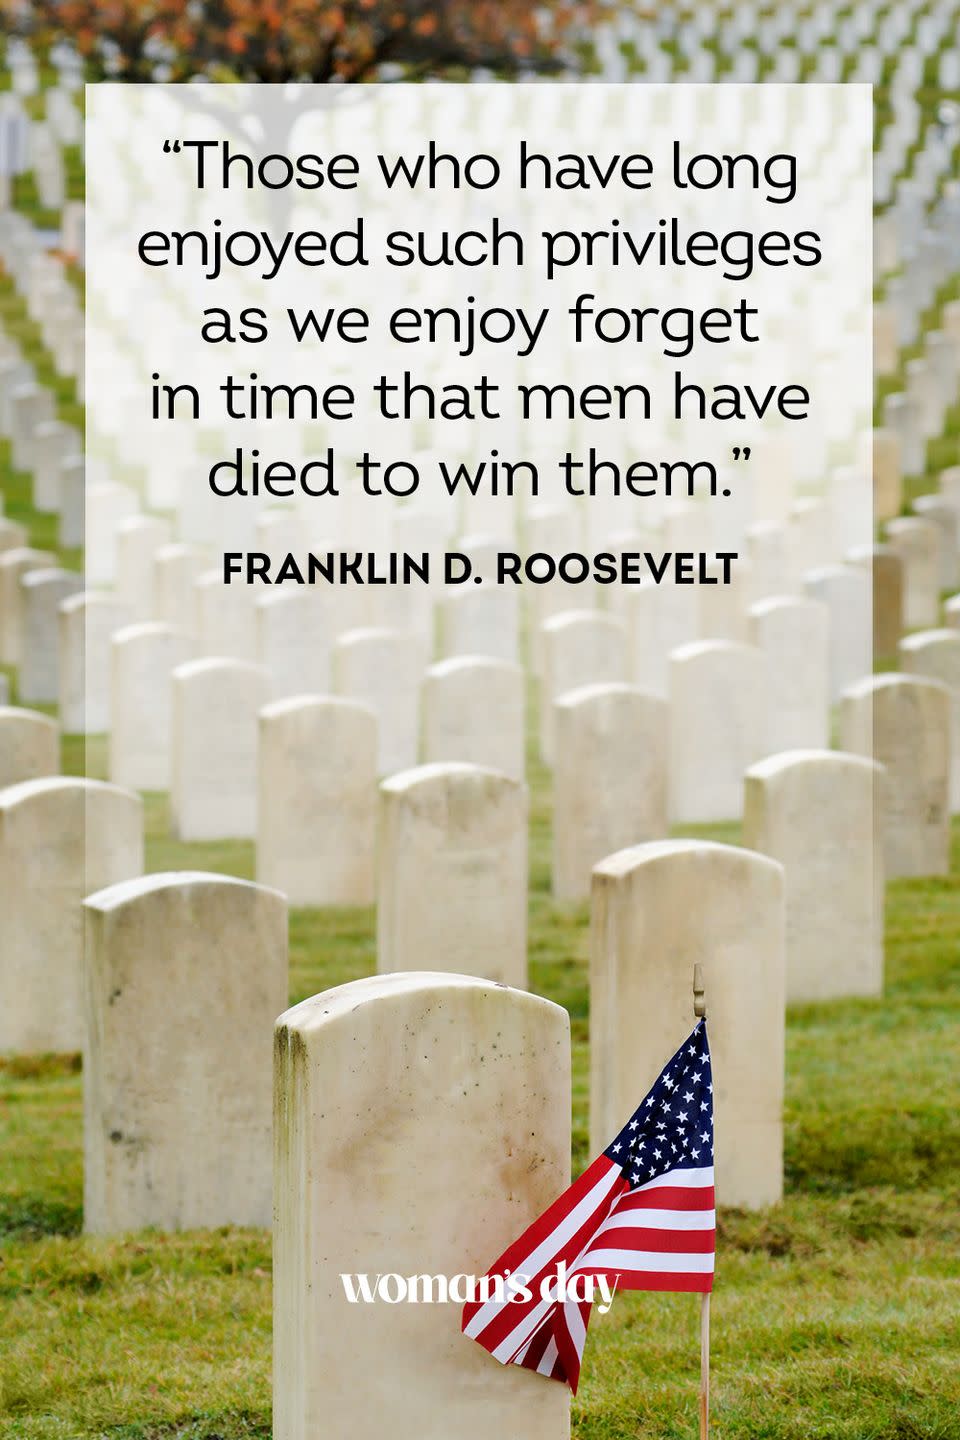 13) Franklin D. Roosevelt